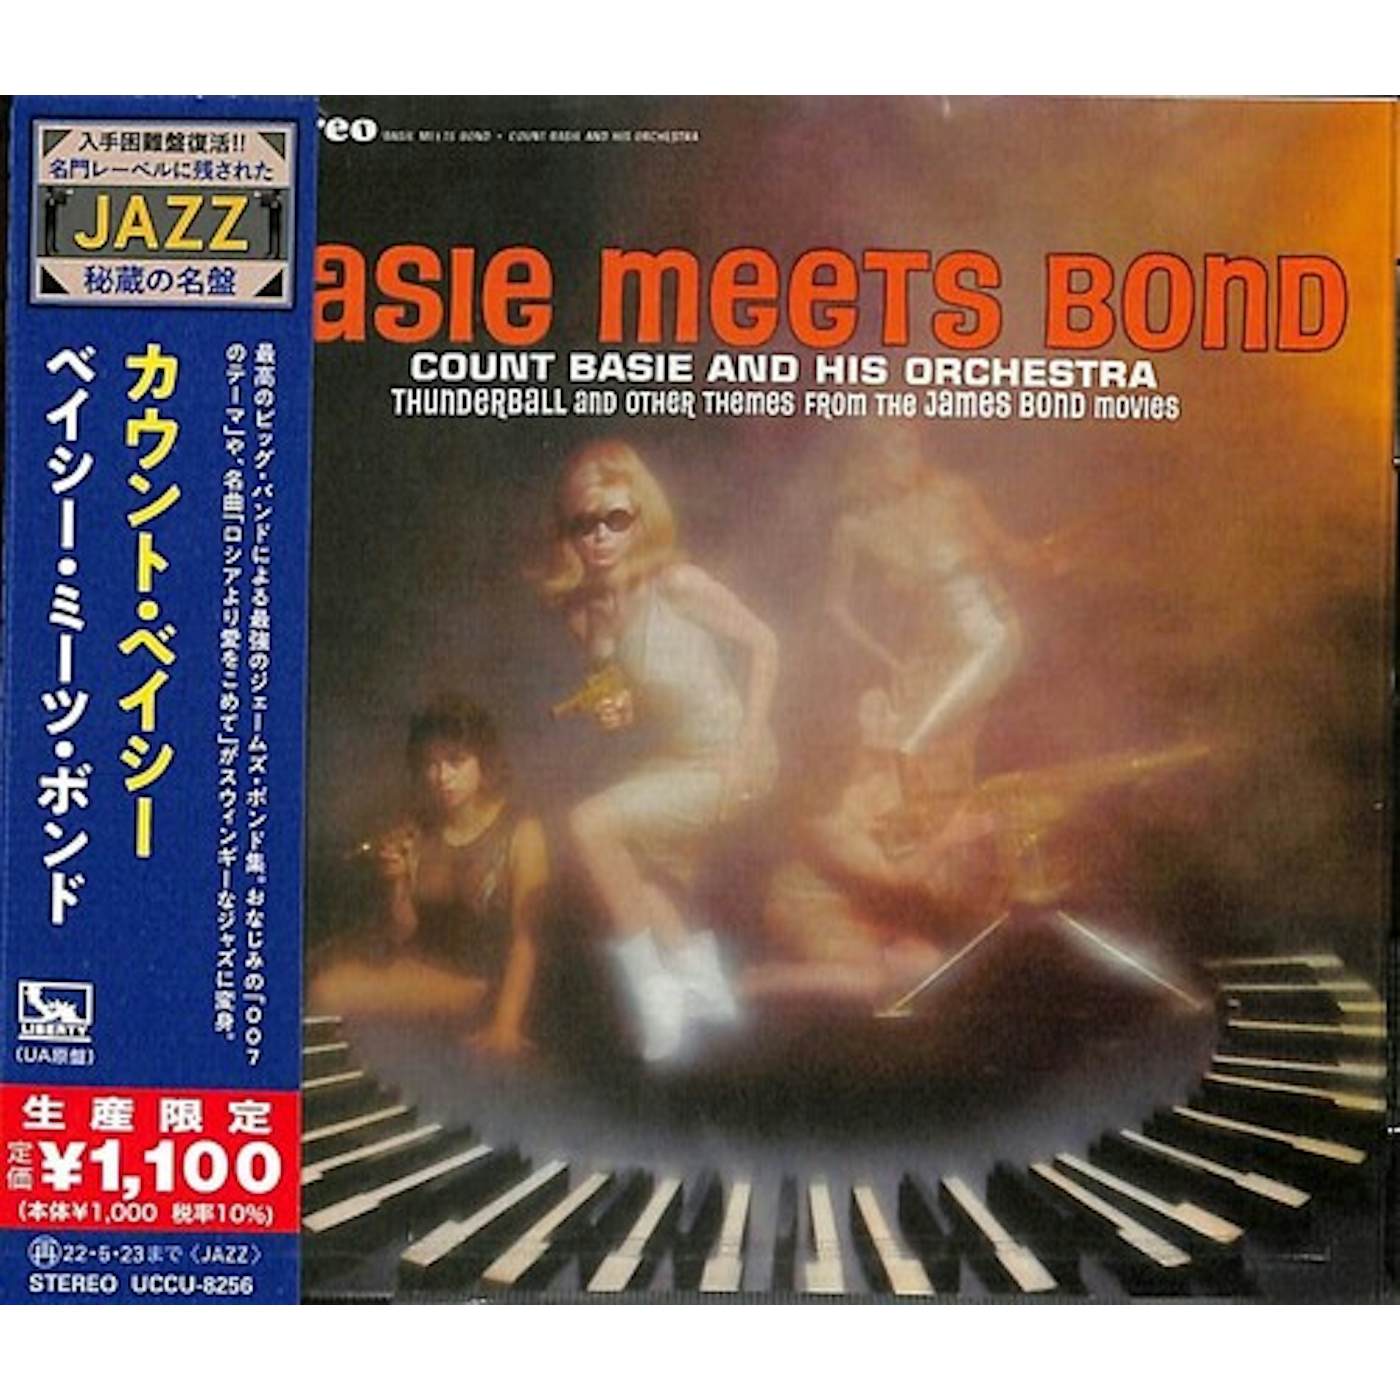 Count Basie BASIE MEETS BOND CD